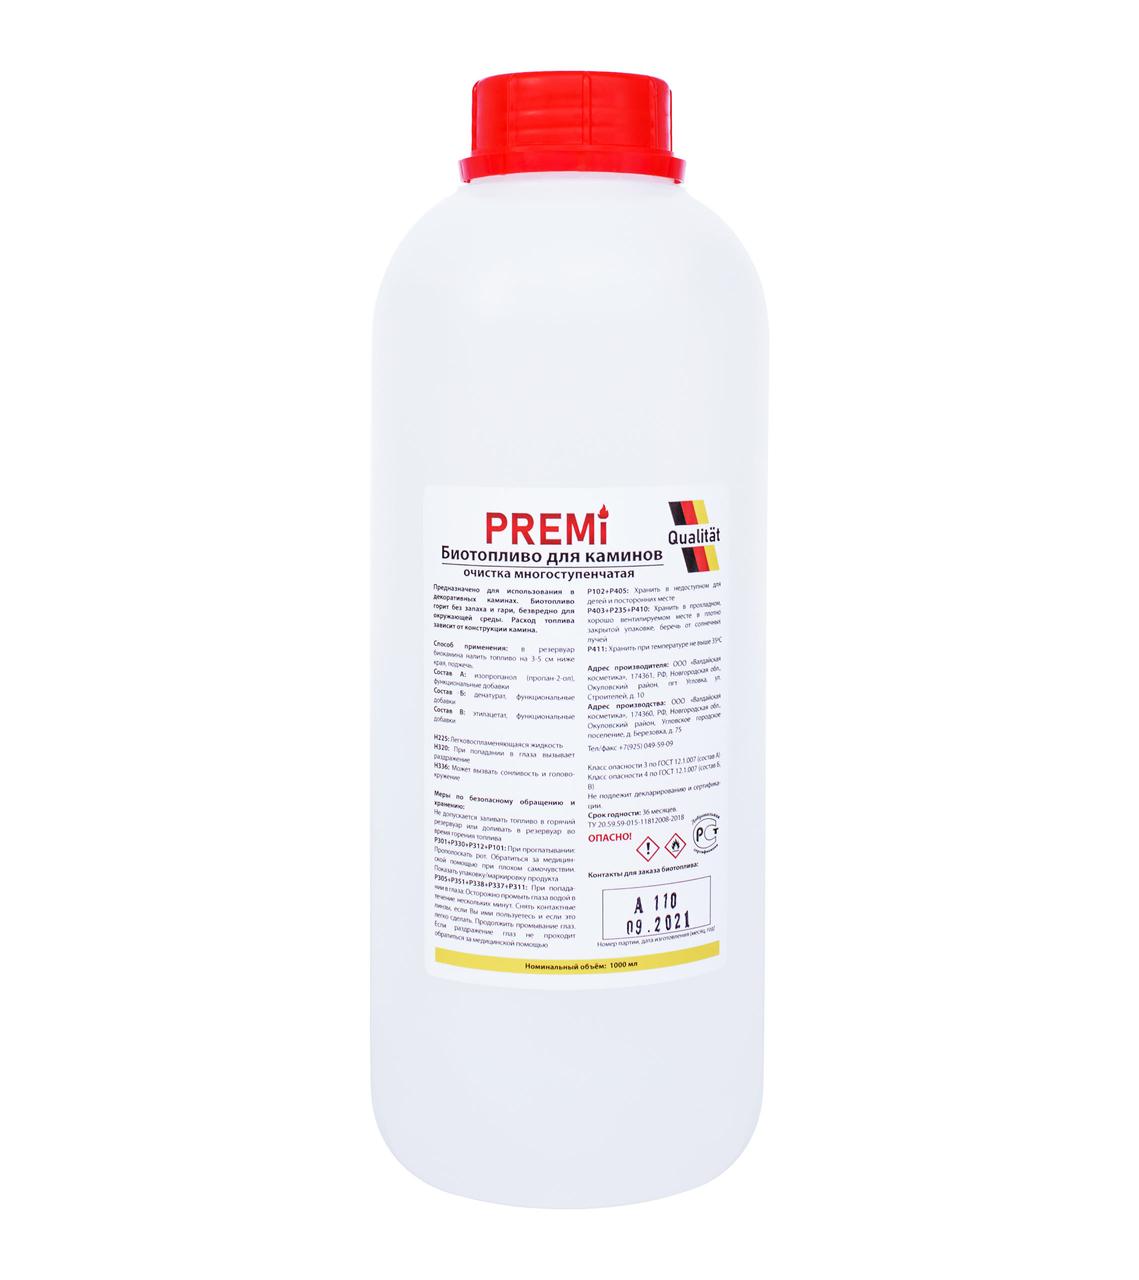 Биотопливо для каминов Premi 1L (Двойная очистка)